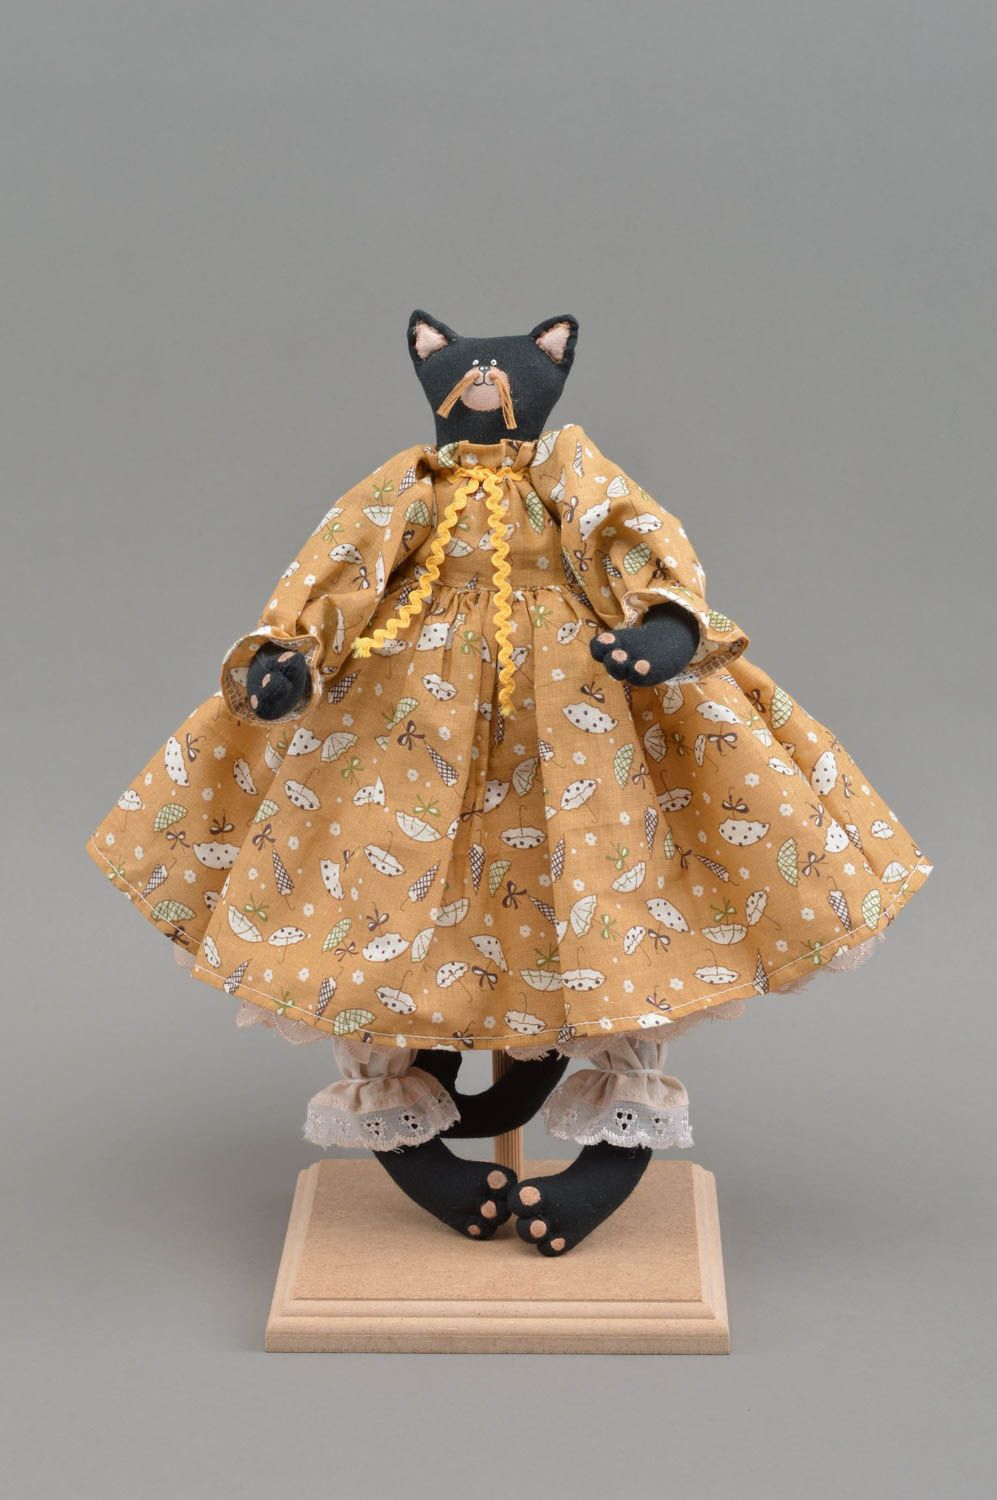 Мягкая кукла кошка в платье из хлопка игрушка для интерьера и детей хенд мейд фото 2